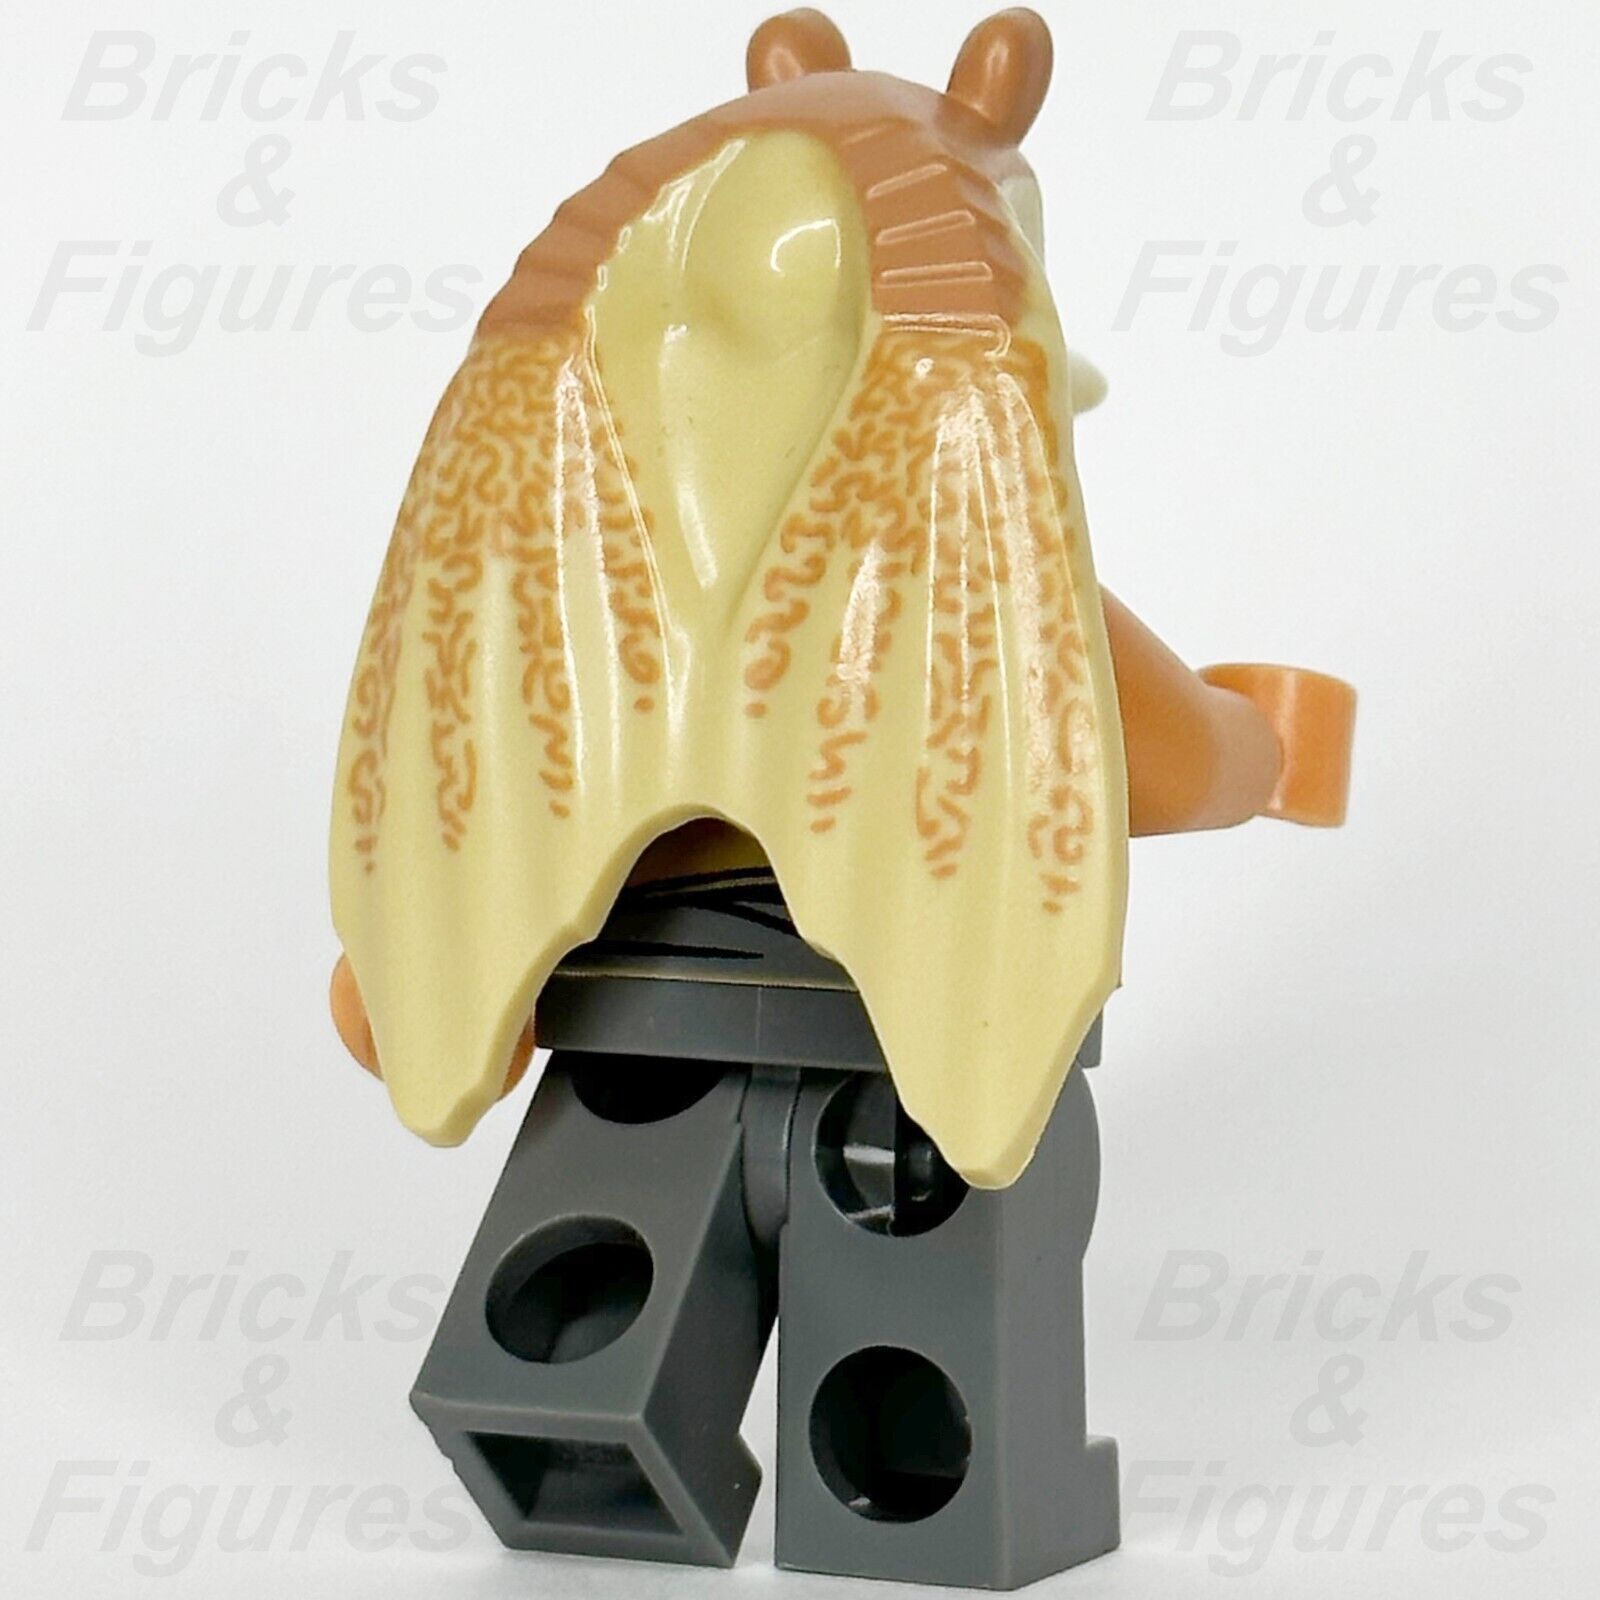 LEGO Star Wars Jar Jar Binks Minifigure Gungan General 75080 9499 7929 sw0301 3